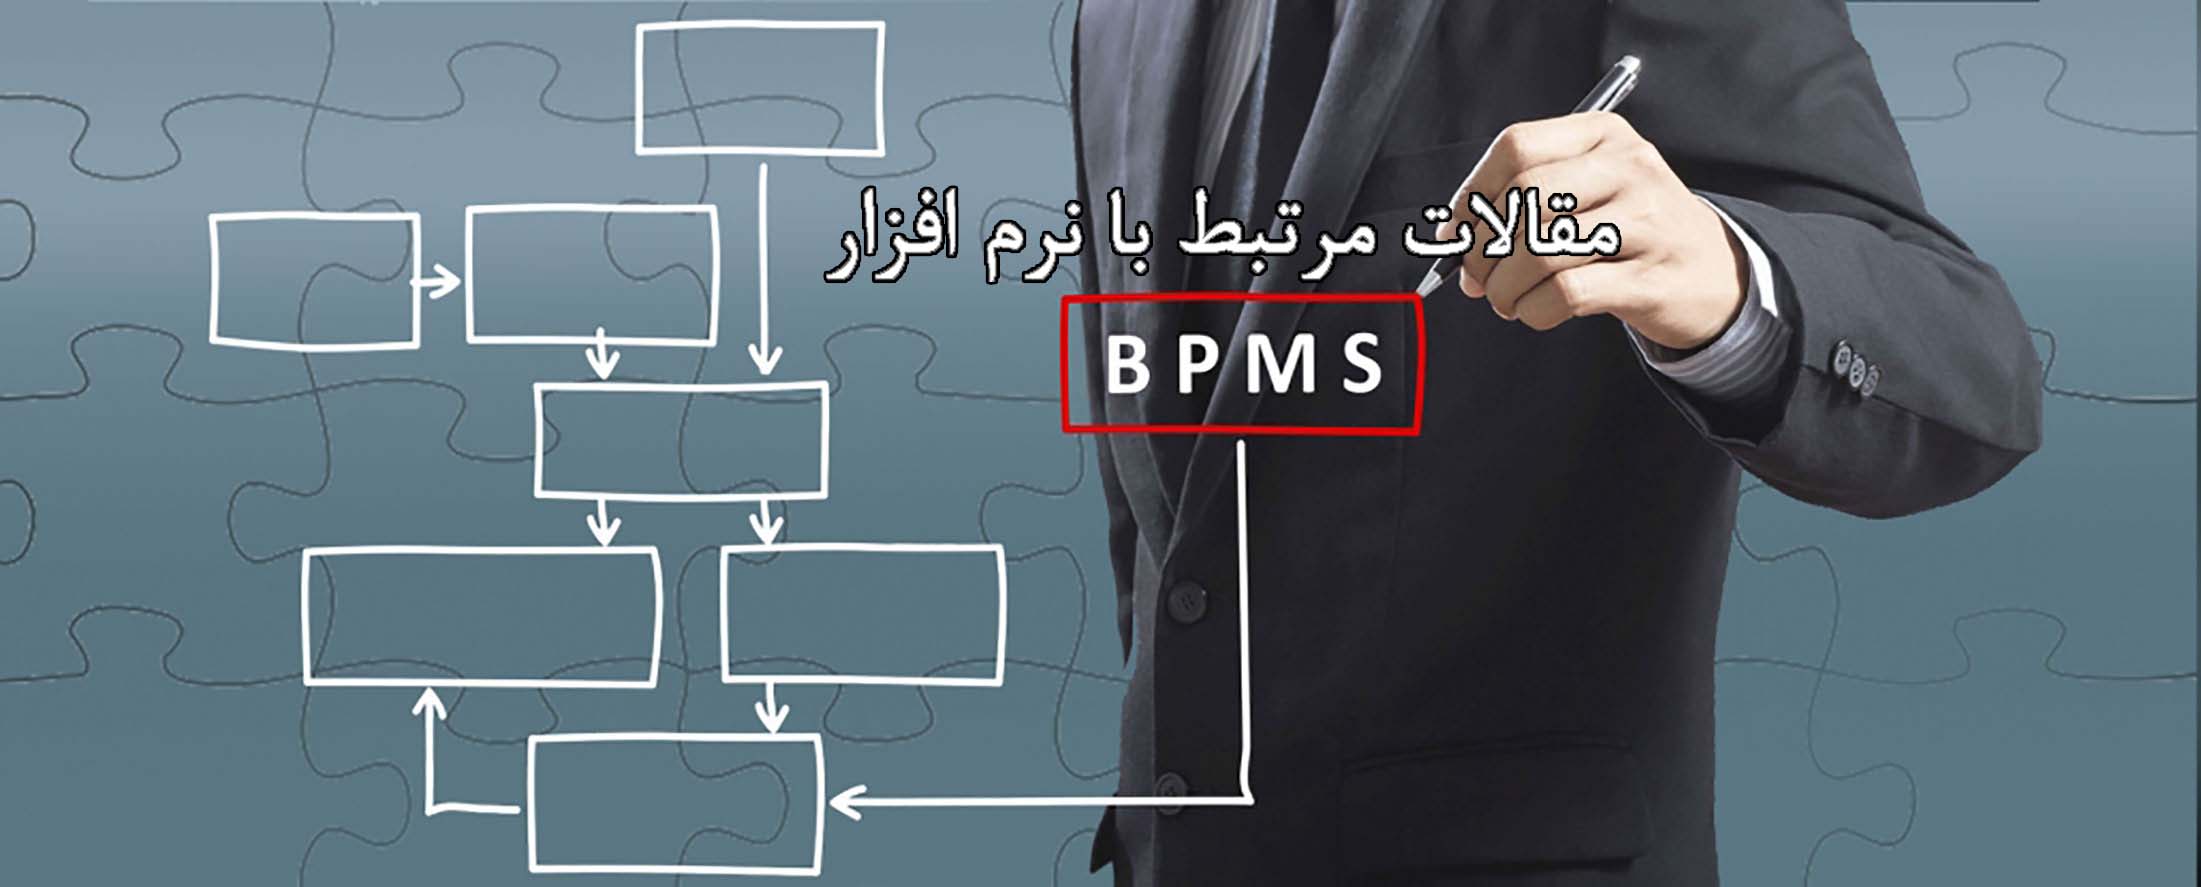 مقالات نرم افزار BPMS